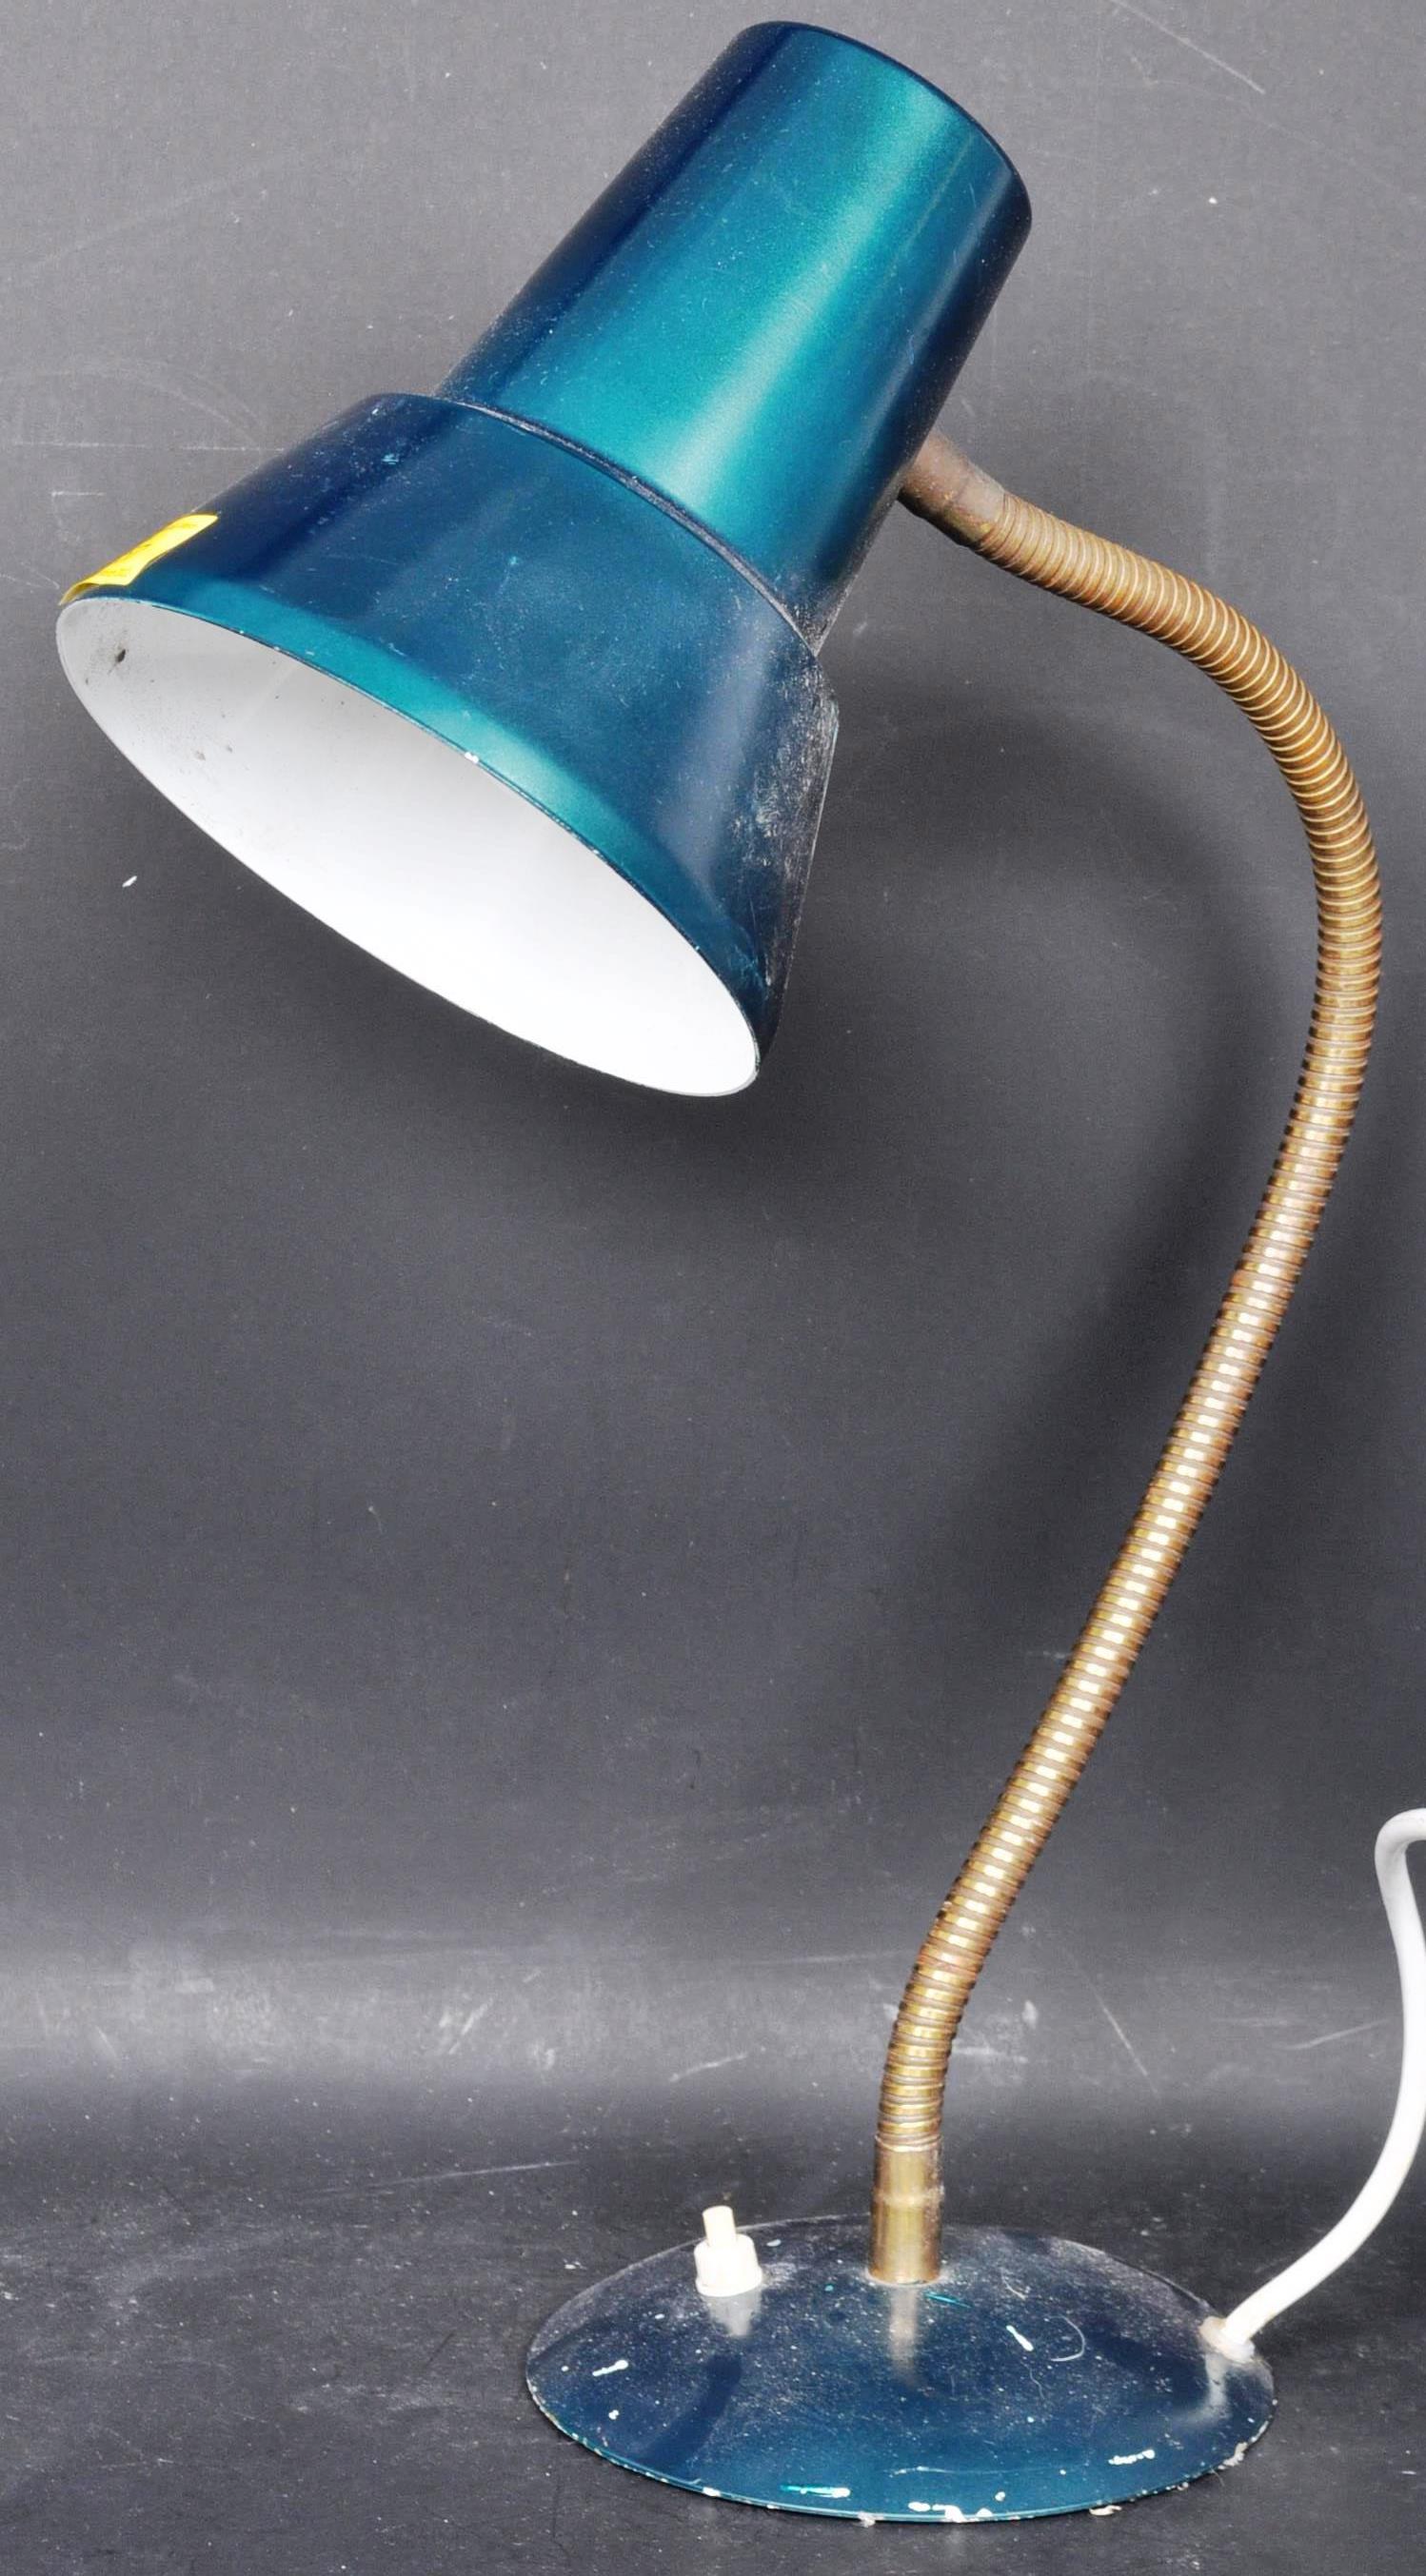 RETRO VINTAGE INDUSTRIAL MID 20TH CENTURY DESKTOP LAMP